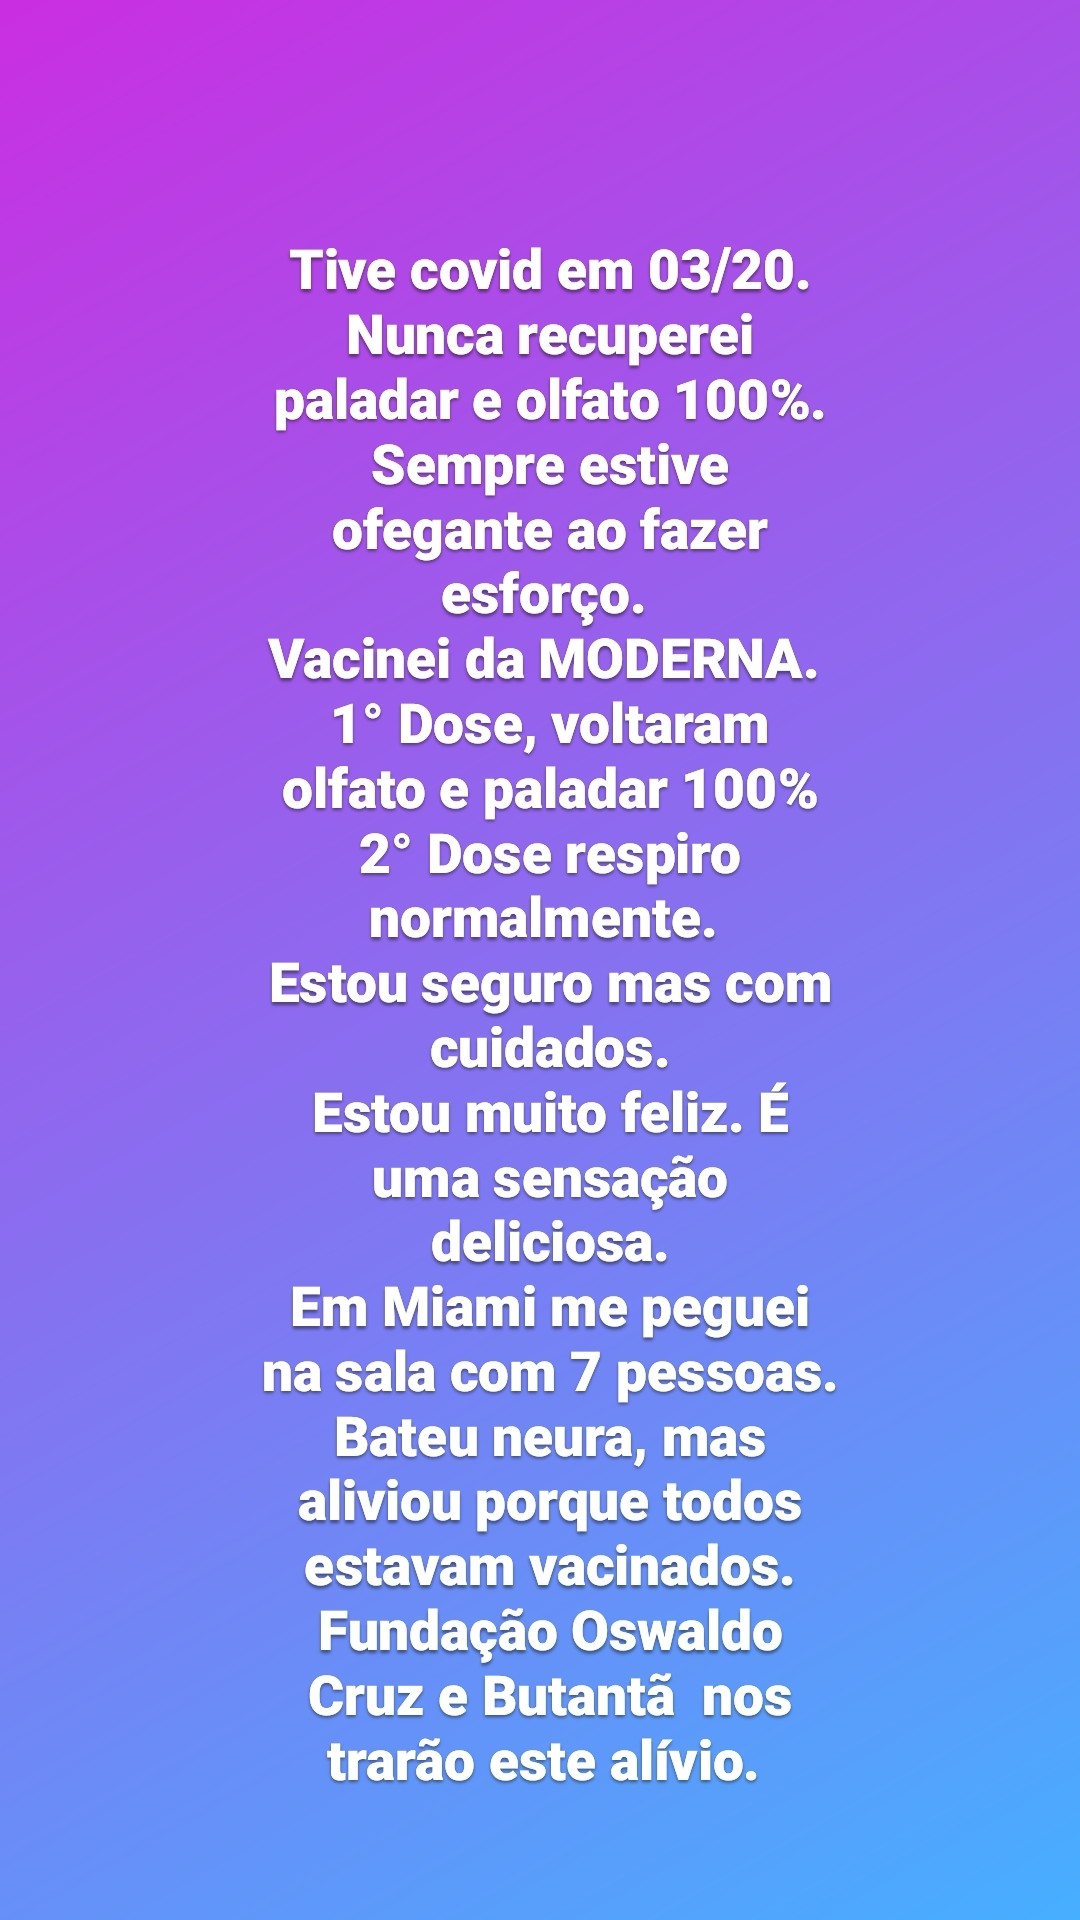 Painitto, Mauro Machado, no Instagram (Foto: Reprodução/Instagram)